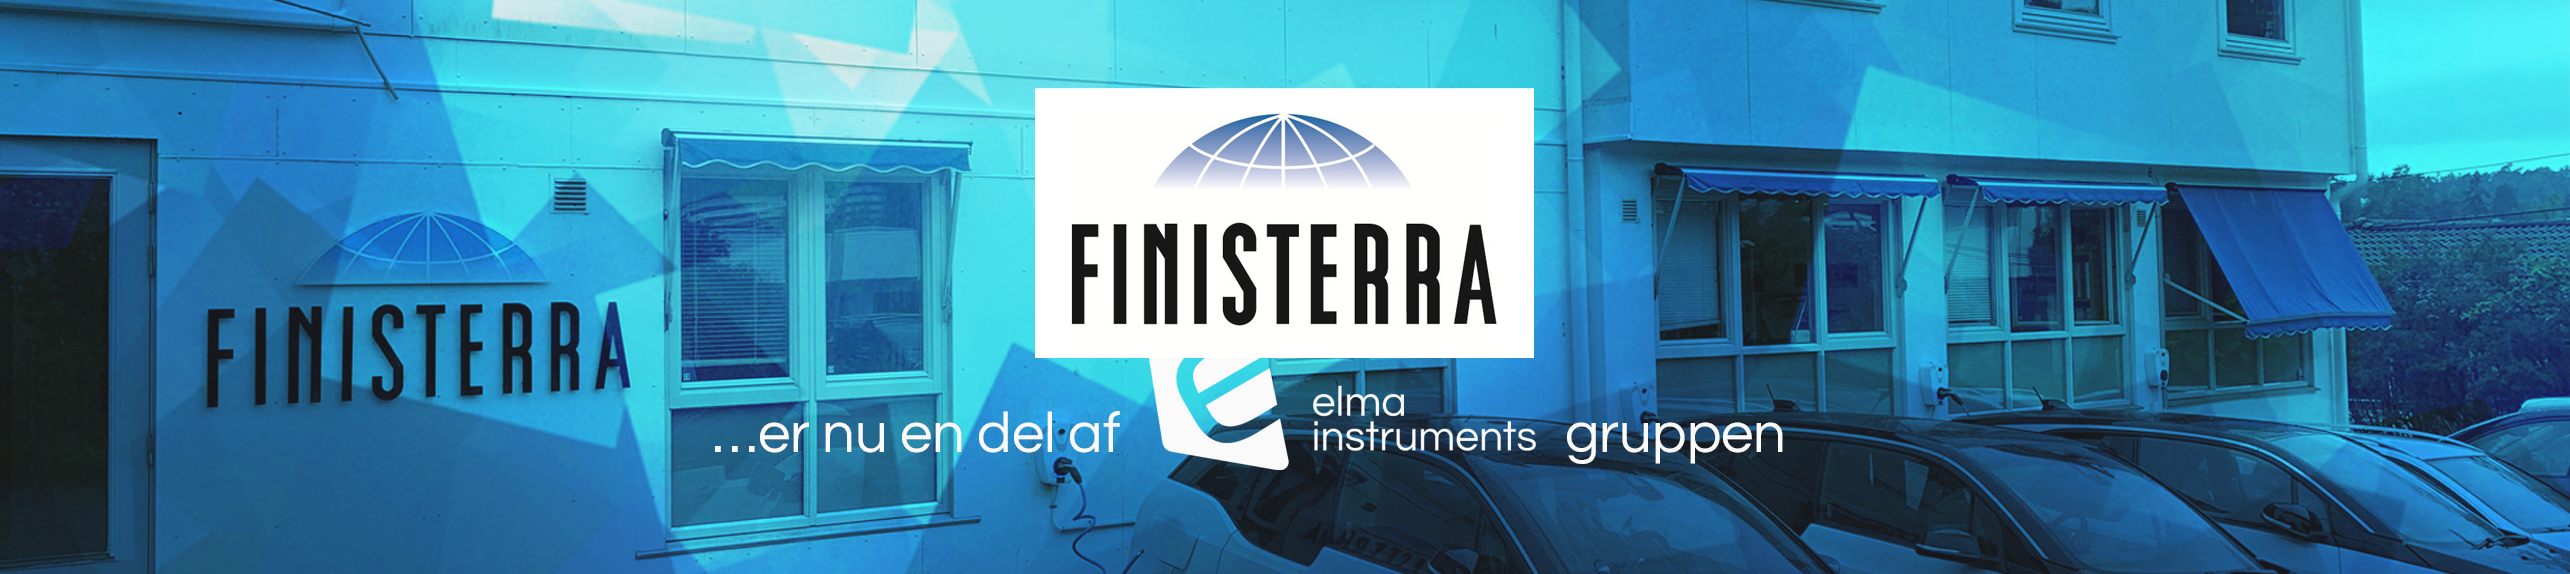 Finisterra er nu en del af Elma Instruments gruppen